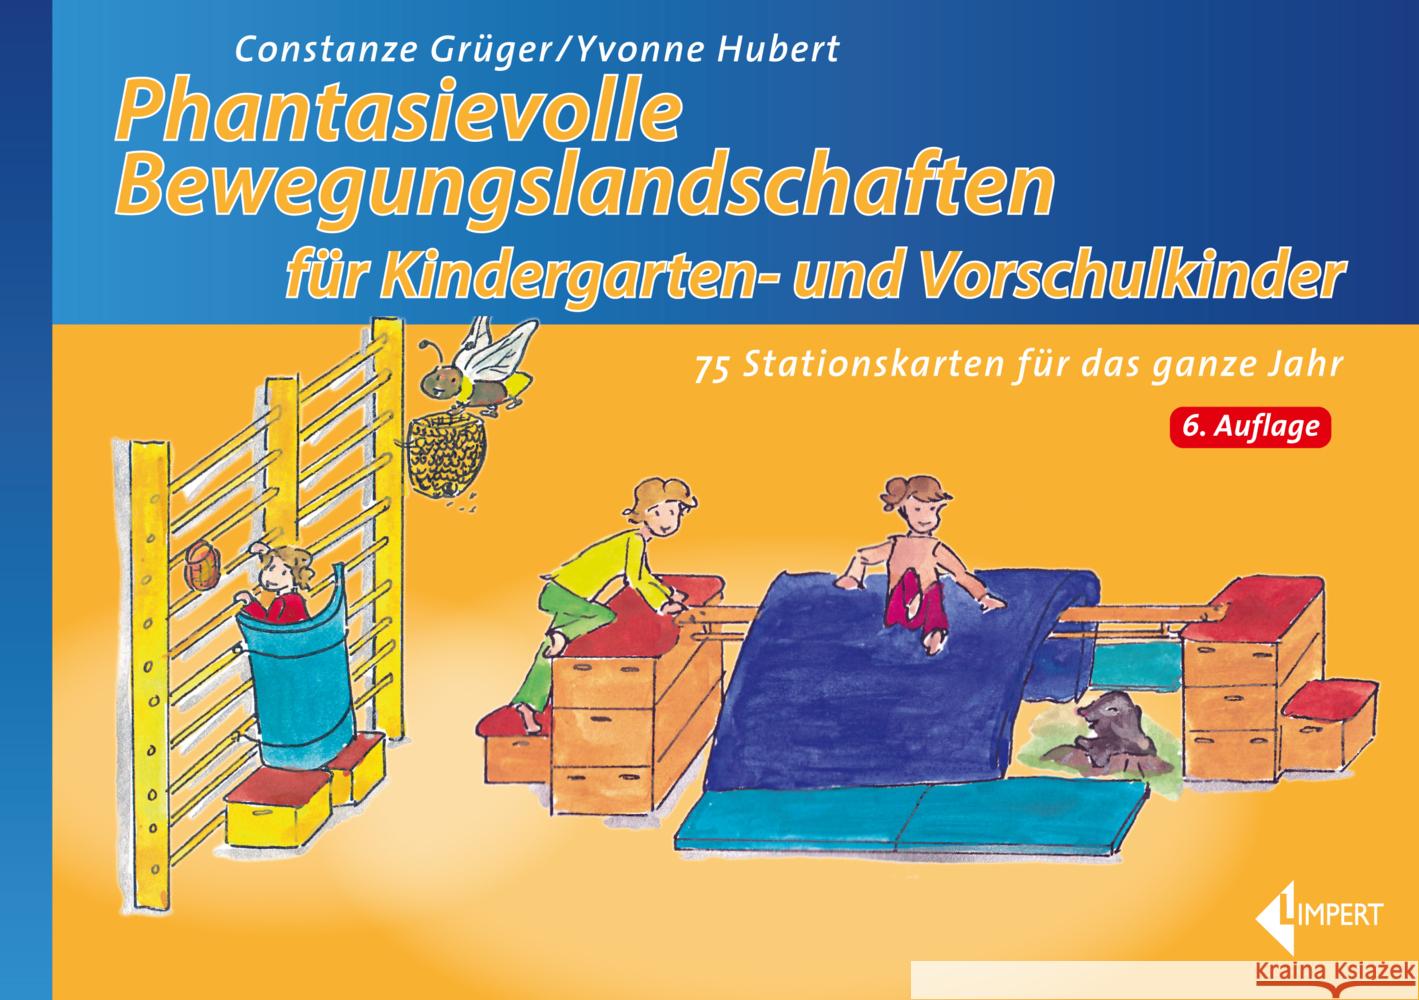 Phantasievolle Bewegungslandschaften für Kindergarten- und Vorschulkinder Grüger, Constanze, Hubert, Yvonne 9783785320068 Limpert - książka